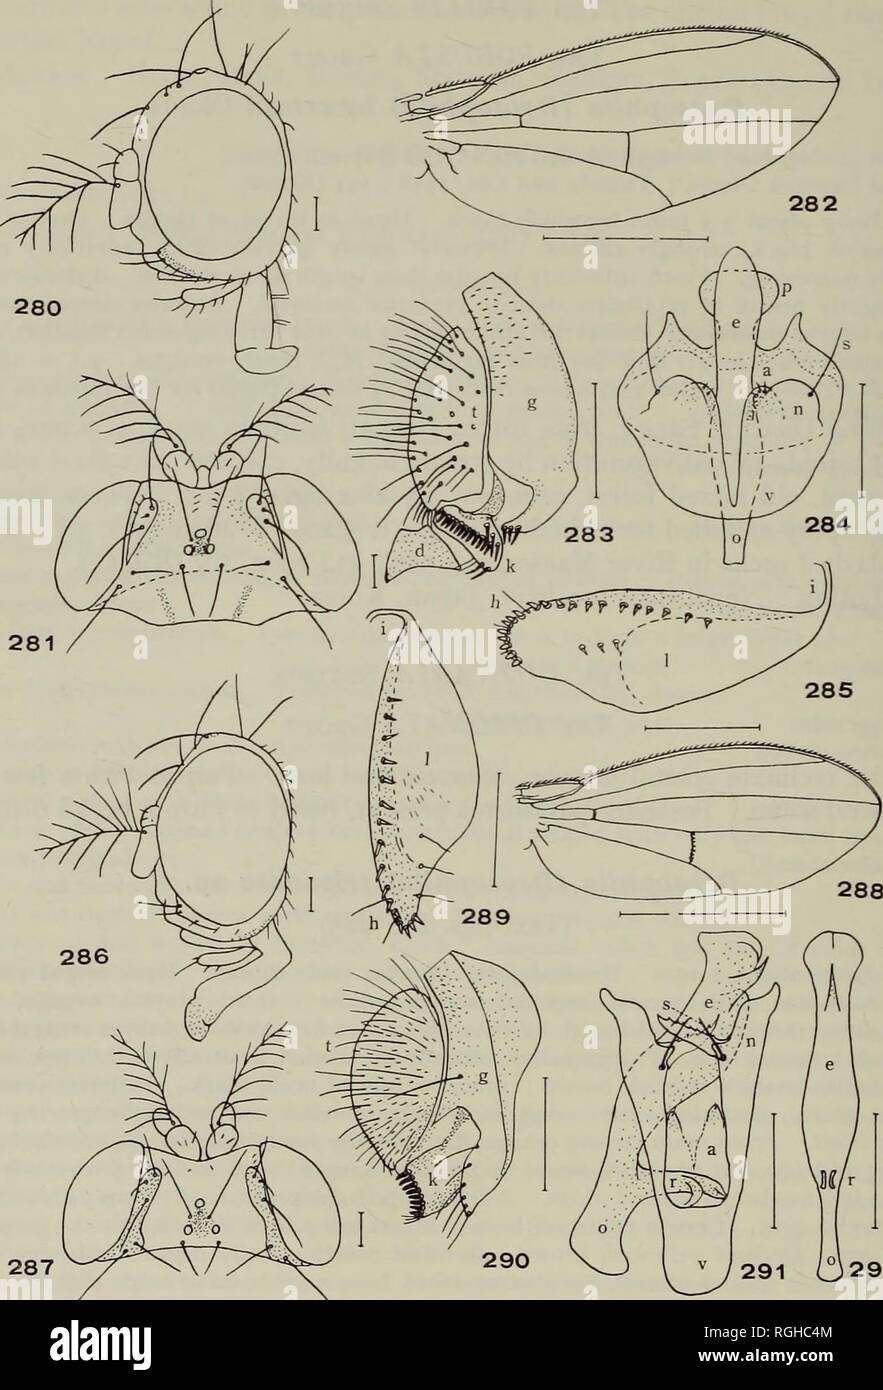 . Bulletin of the British Museum (Natural History) Entom e suppl. 98 T. OKADA. 292 Figs. 280-292. 280-285, la drosophile (Drosophila) trizonata sp. n. 280, 3* Siège, aspect latéral ; 281, 6* Siège, face dorsale ; 282, 283 ; l'escadre, organes, periphallic ; aspect latéral, 284 organes phallique, aspect ventrale ; 285, $ egg-guide. 286-292, la drosophile (Drosophila) trisetosa sp. n. 286, q* Siège, aspect latéral ; 287, q* Siège, face dorsale ; 288, 289 ; l'aile (J, $ egg-guide ; 290 periphallic, organes, aspect latéral ; 291, organes, phallique aspect ventral, avec l'aedeagus latéralement placé ; 292, aedeagus, aspe ventrale Banque D'Images